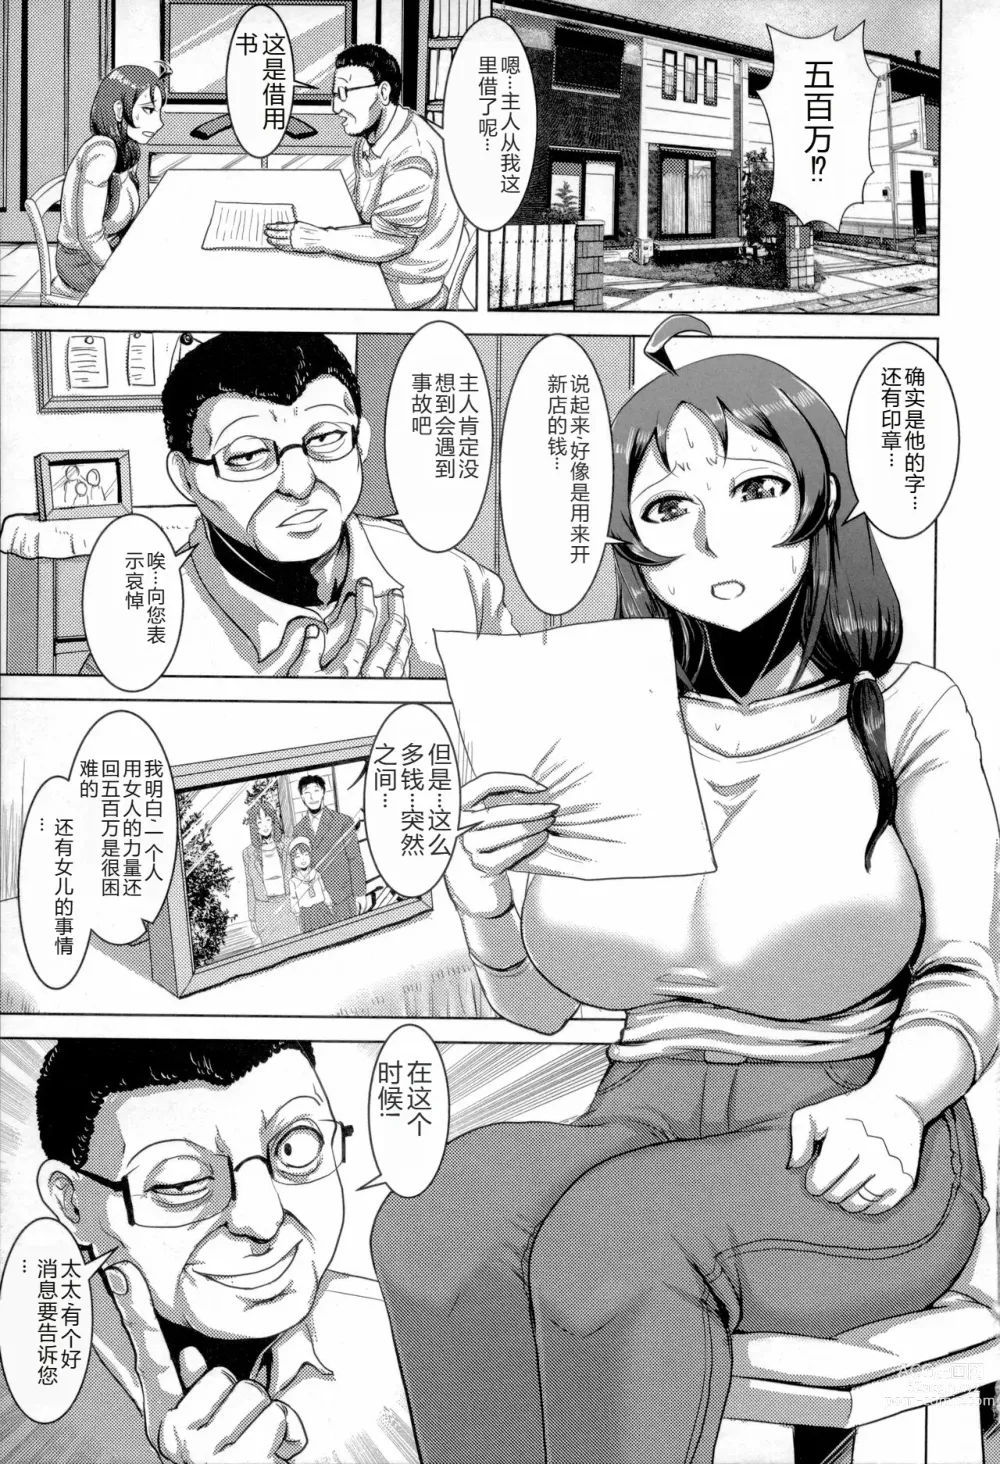 Page 6 of manga Chikujo no Tashinami